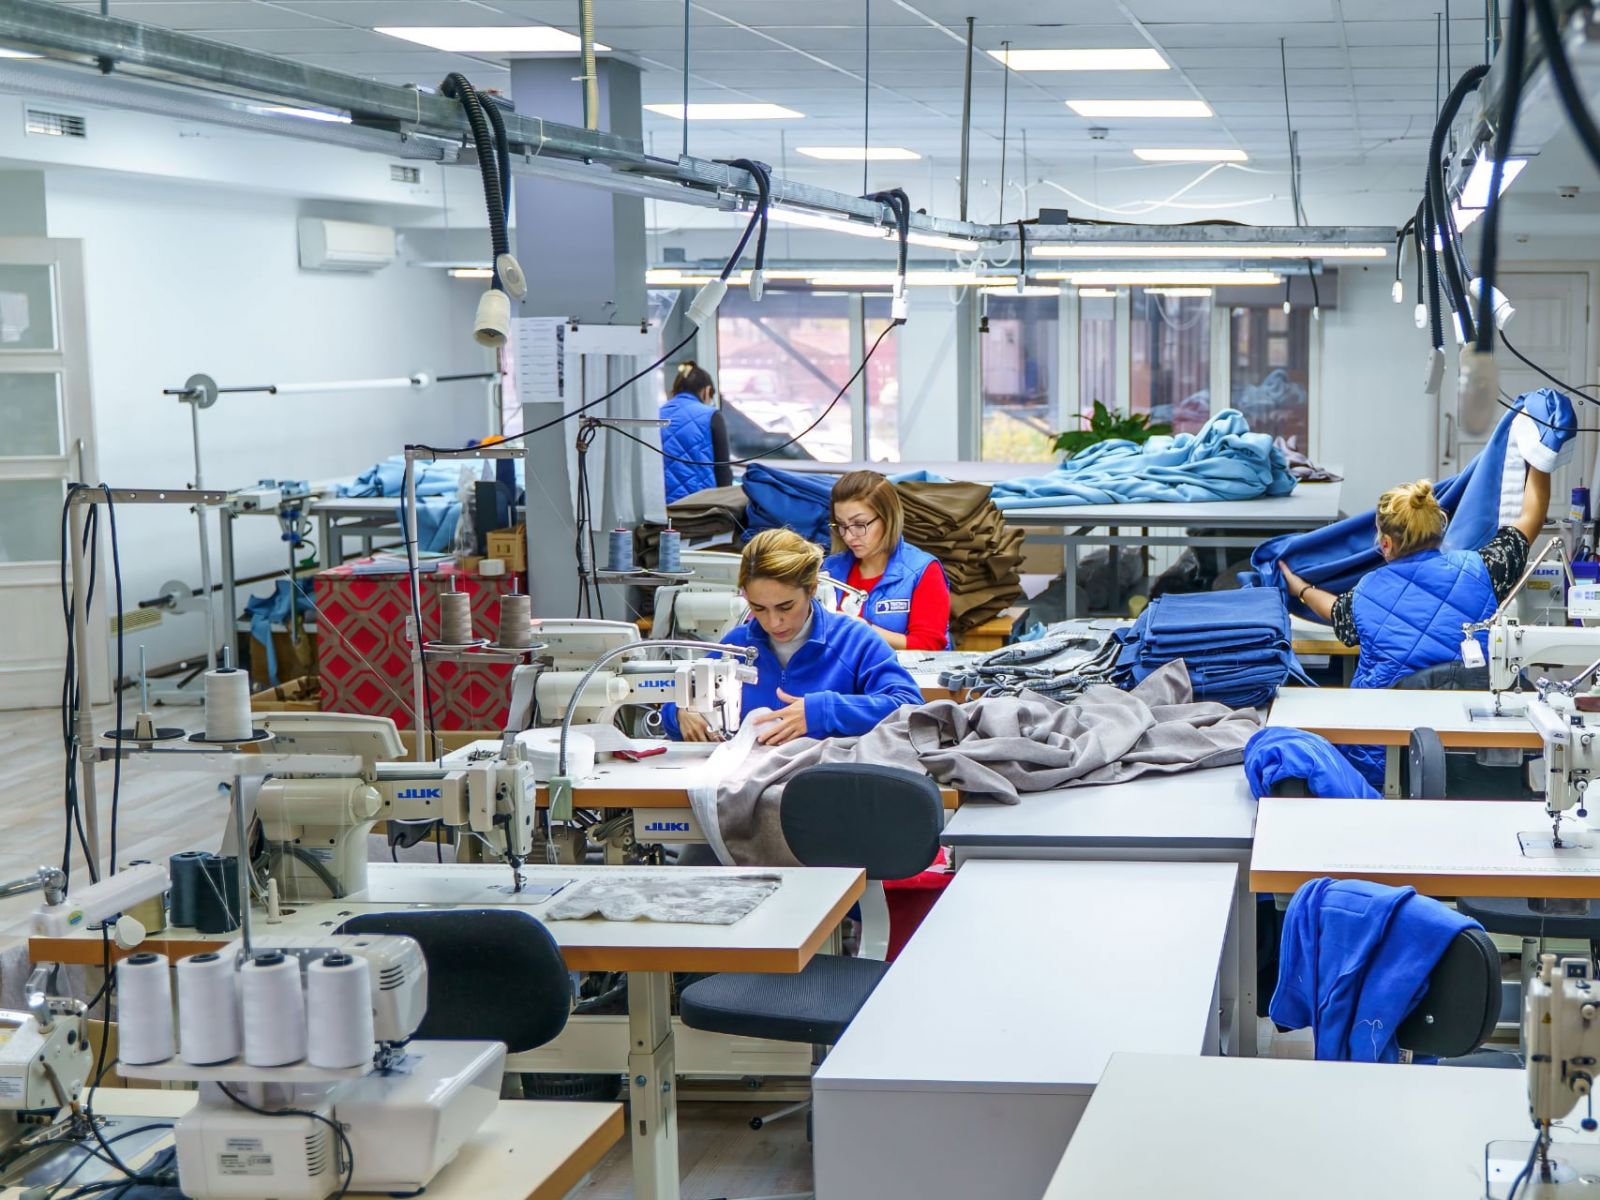 Работники на производстве технической ткани в синих халатах занимаются пошивом на промышленных швейных машинах в светлом помещении мастерской